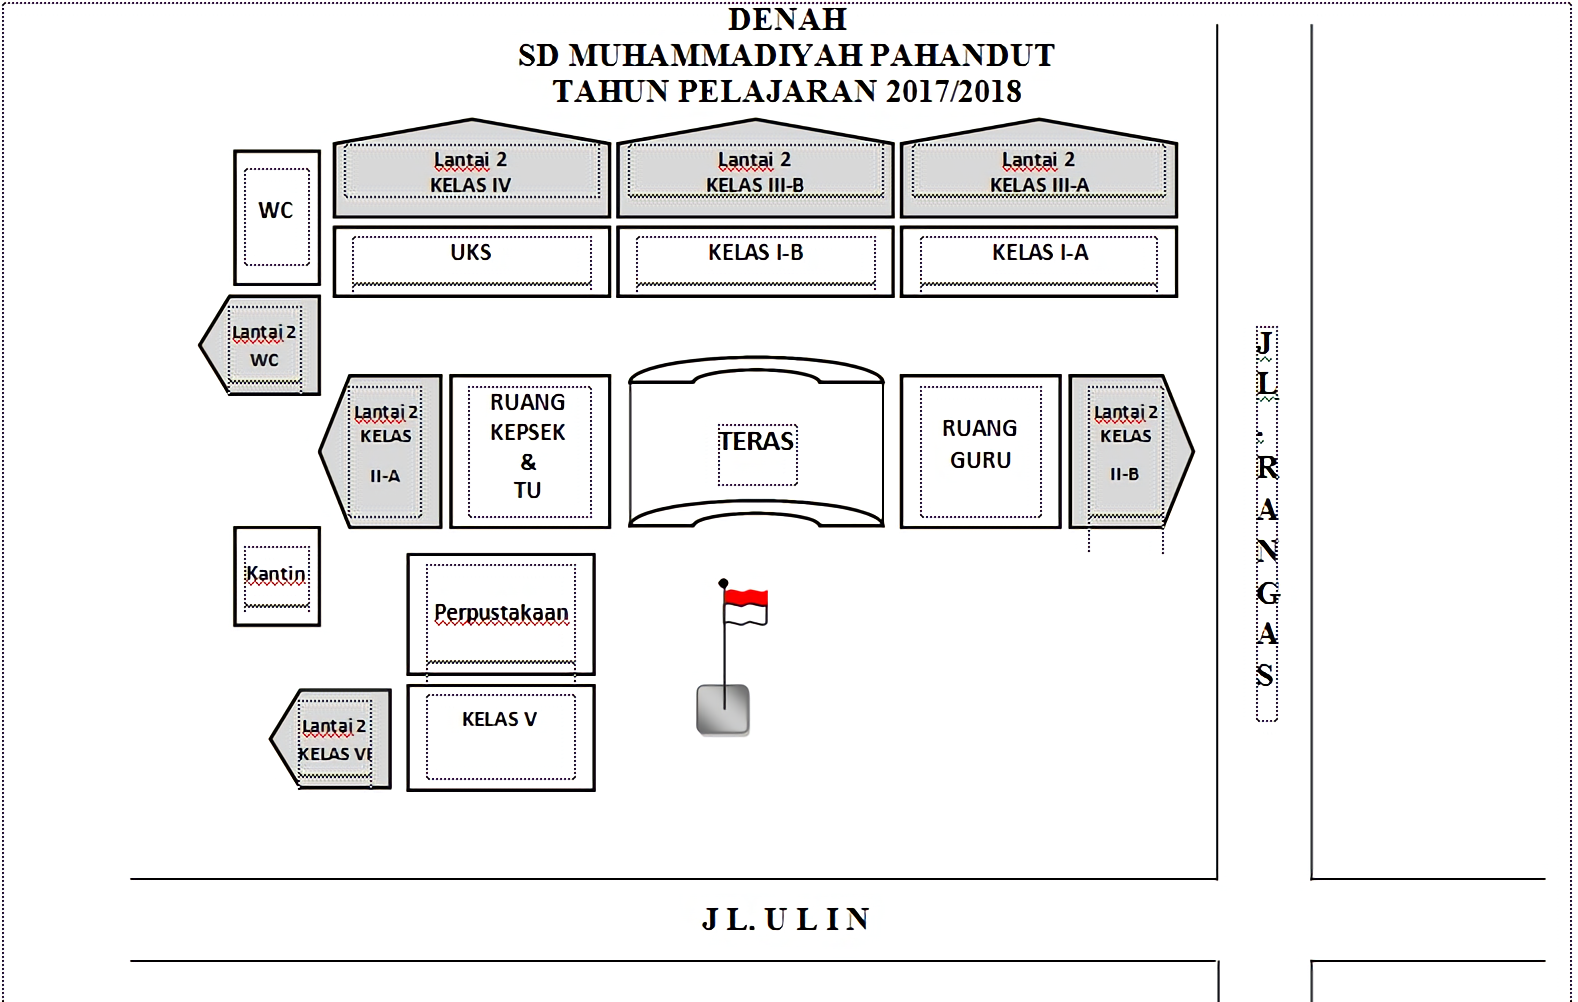 Denah Sekolah Sd Muhammadiyah Pahandut Palangka Raya